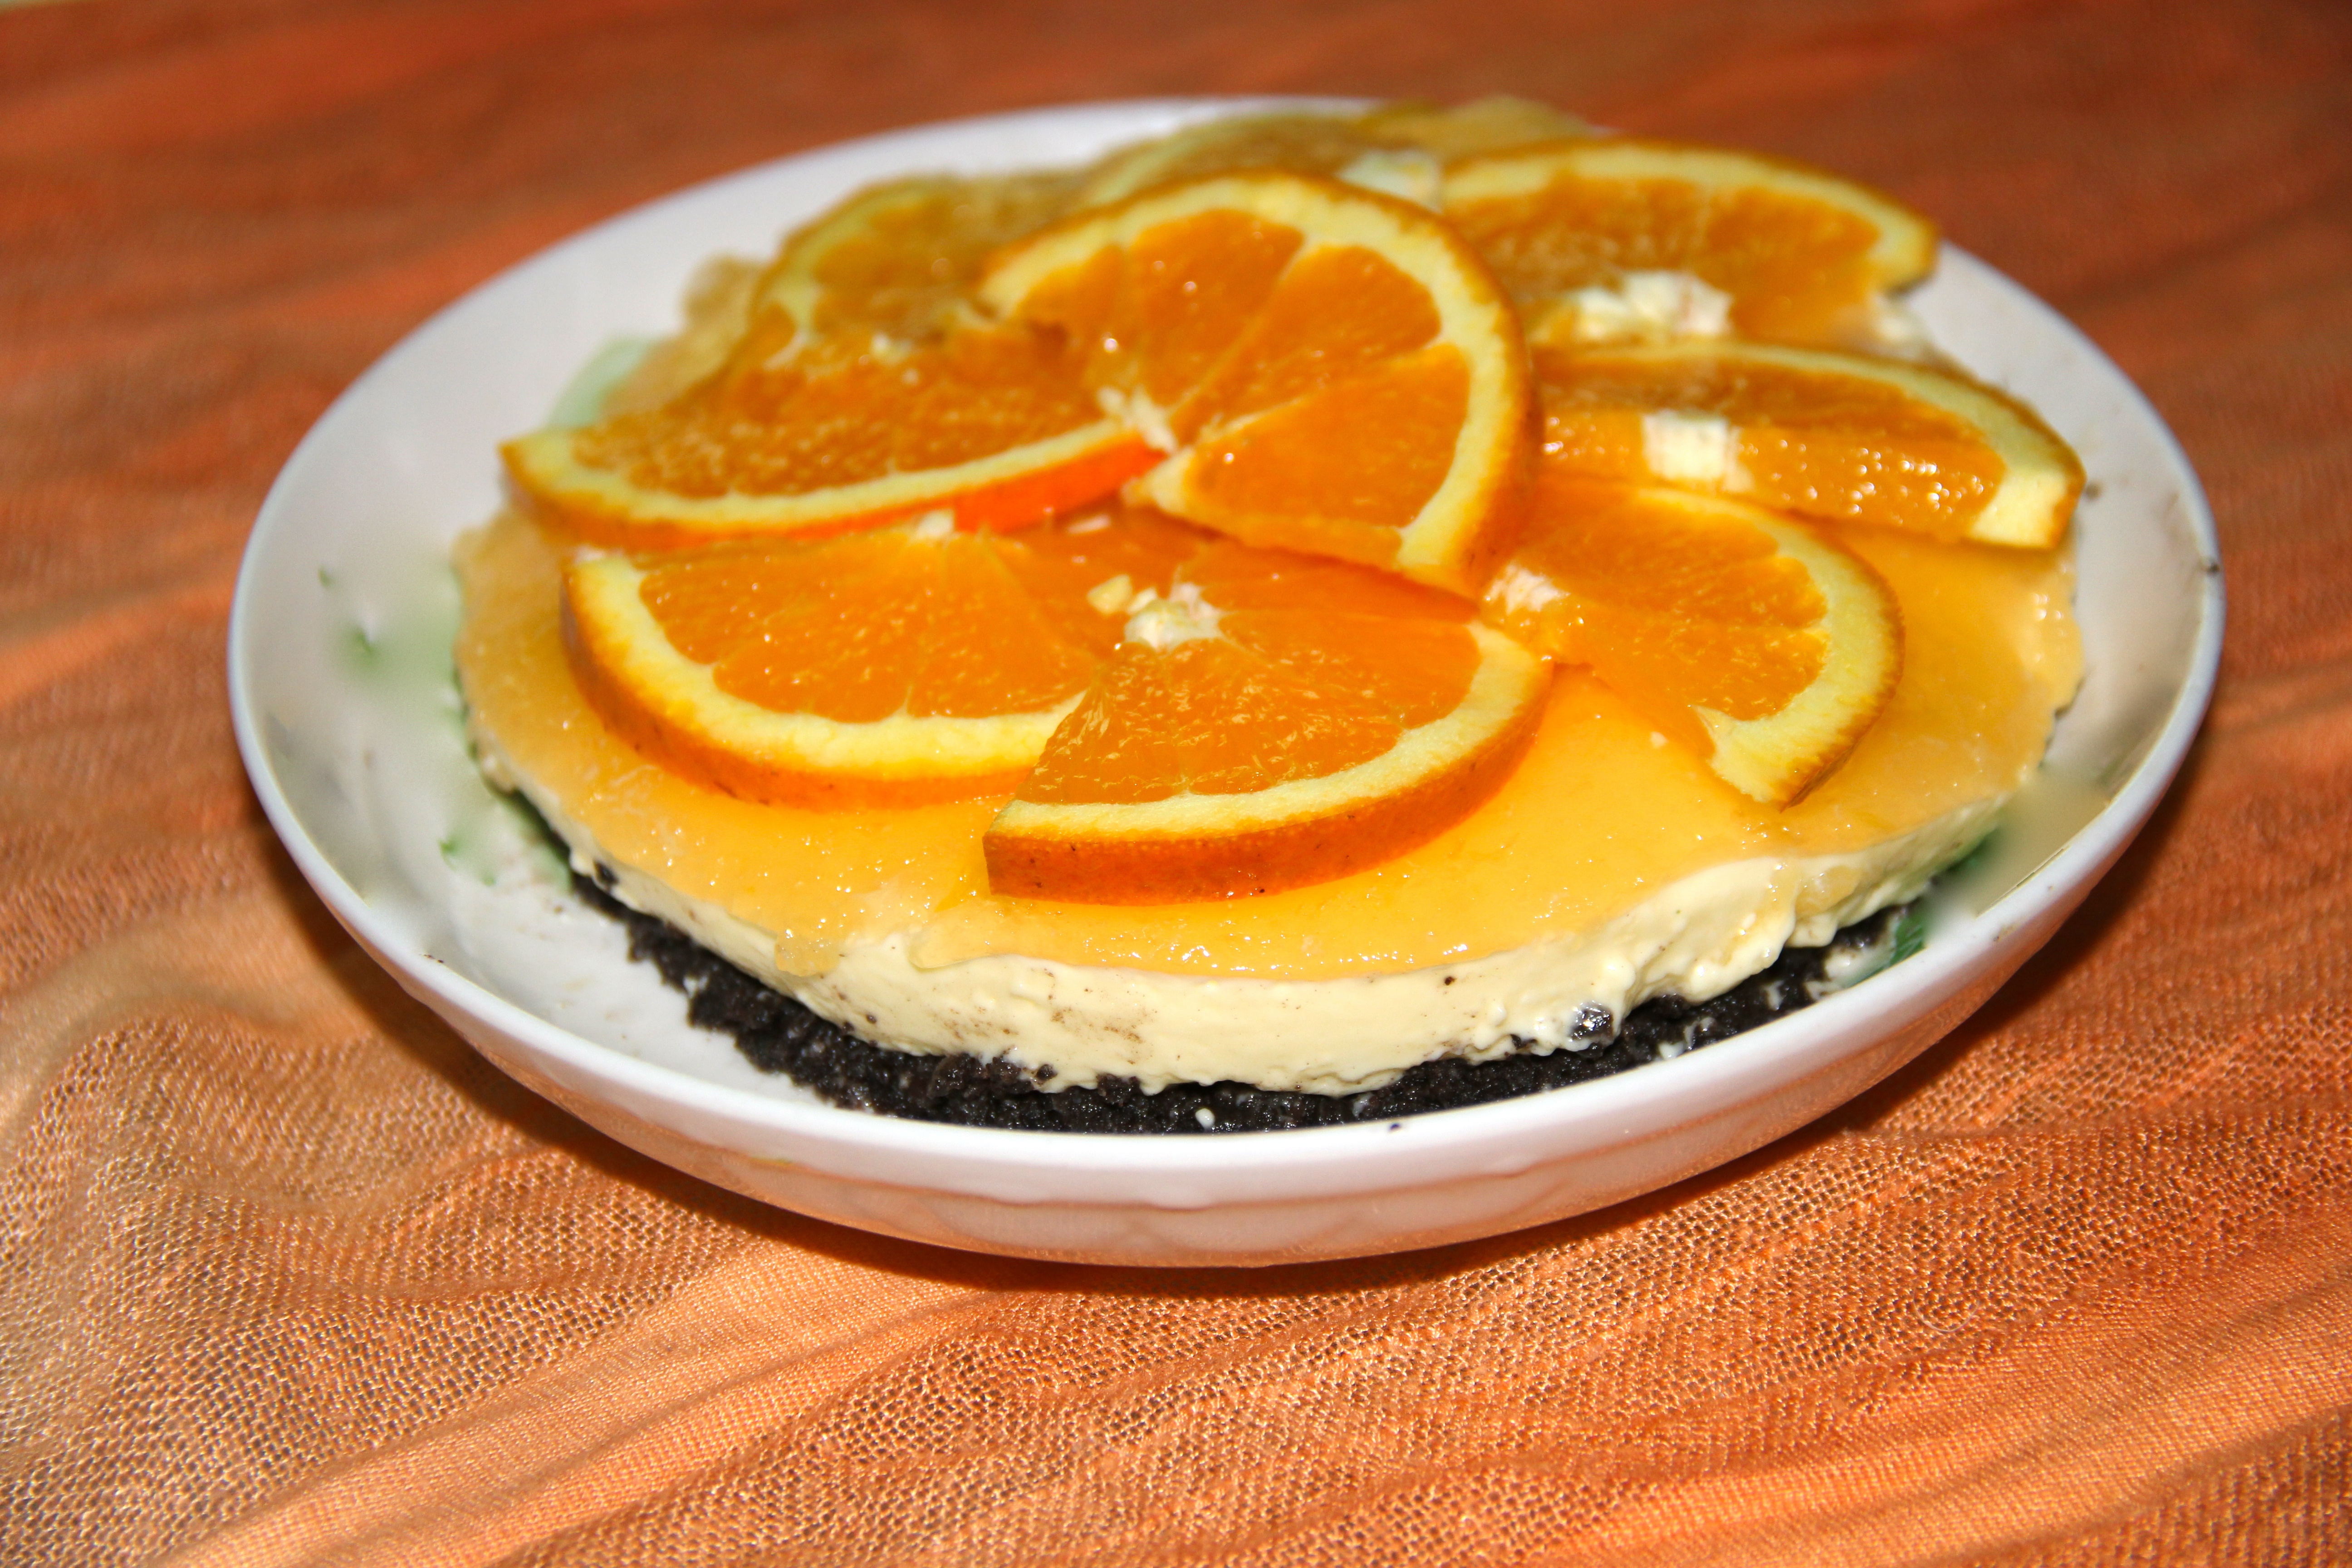 香橙冻芝士蛋糕